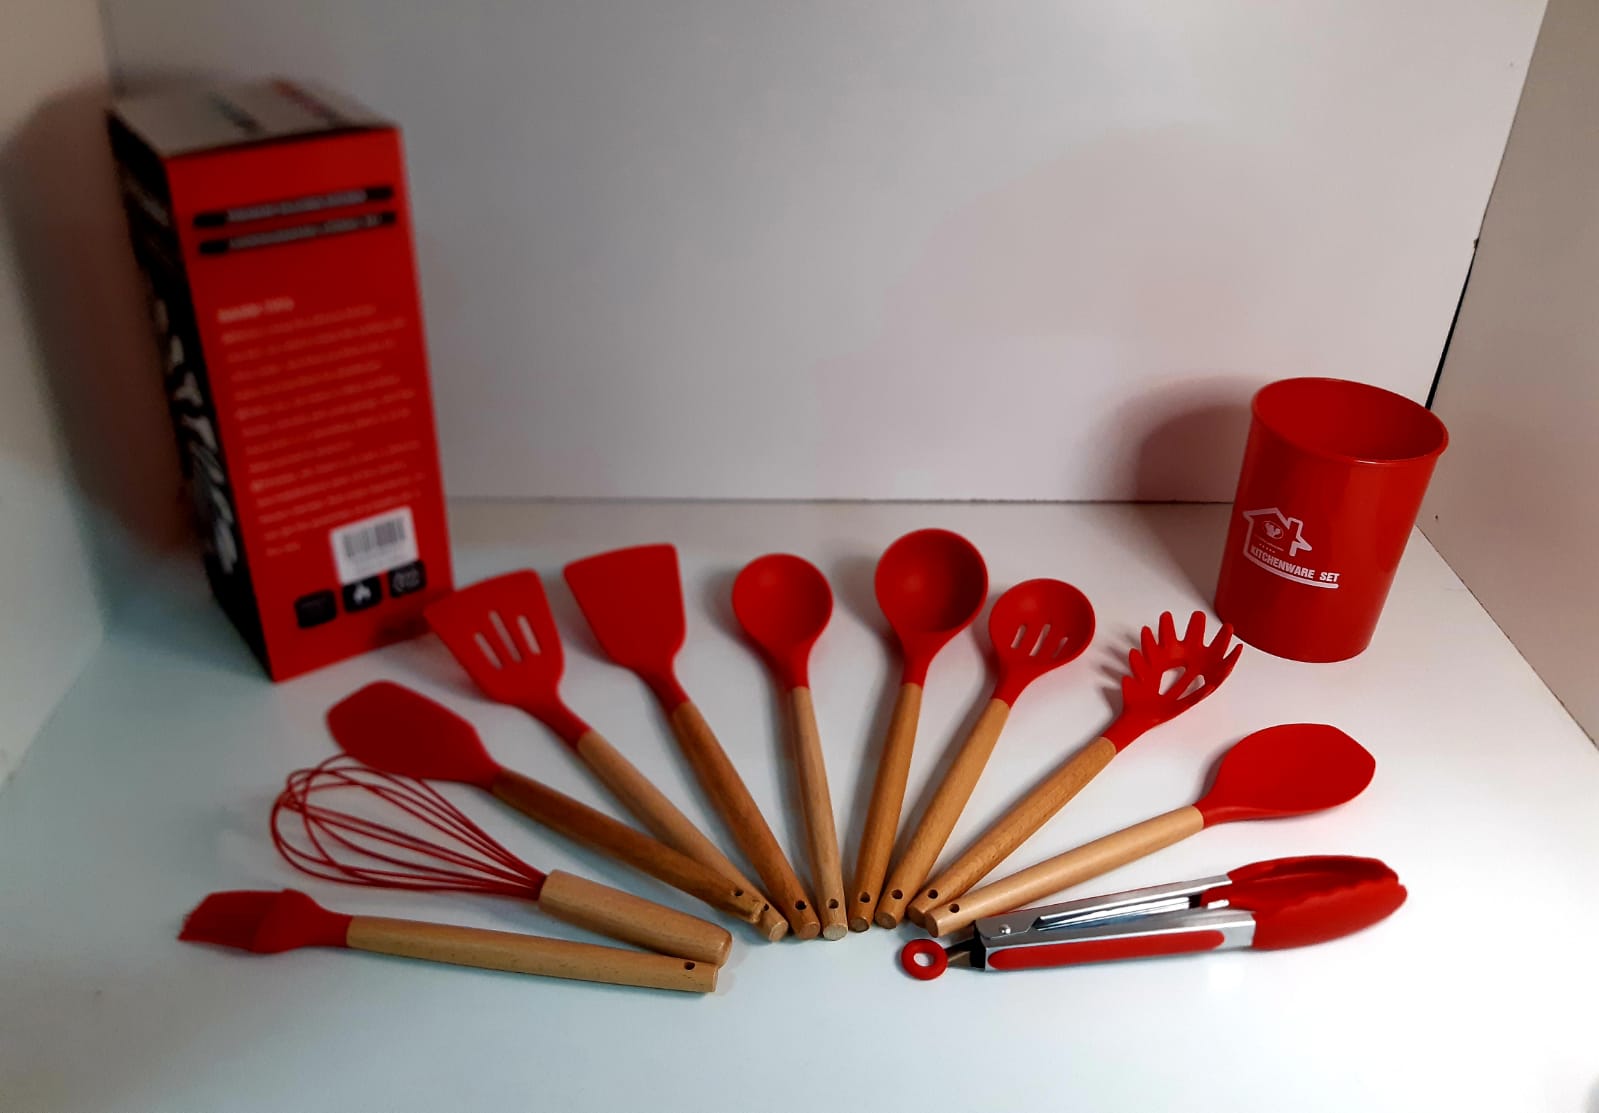 5 utensilios de silicona rojos ENZA UTE02